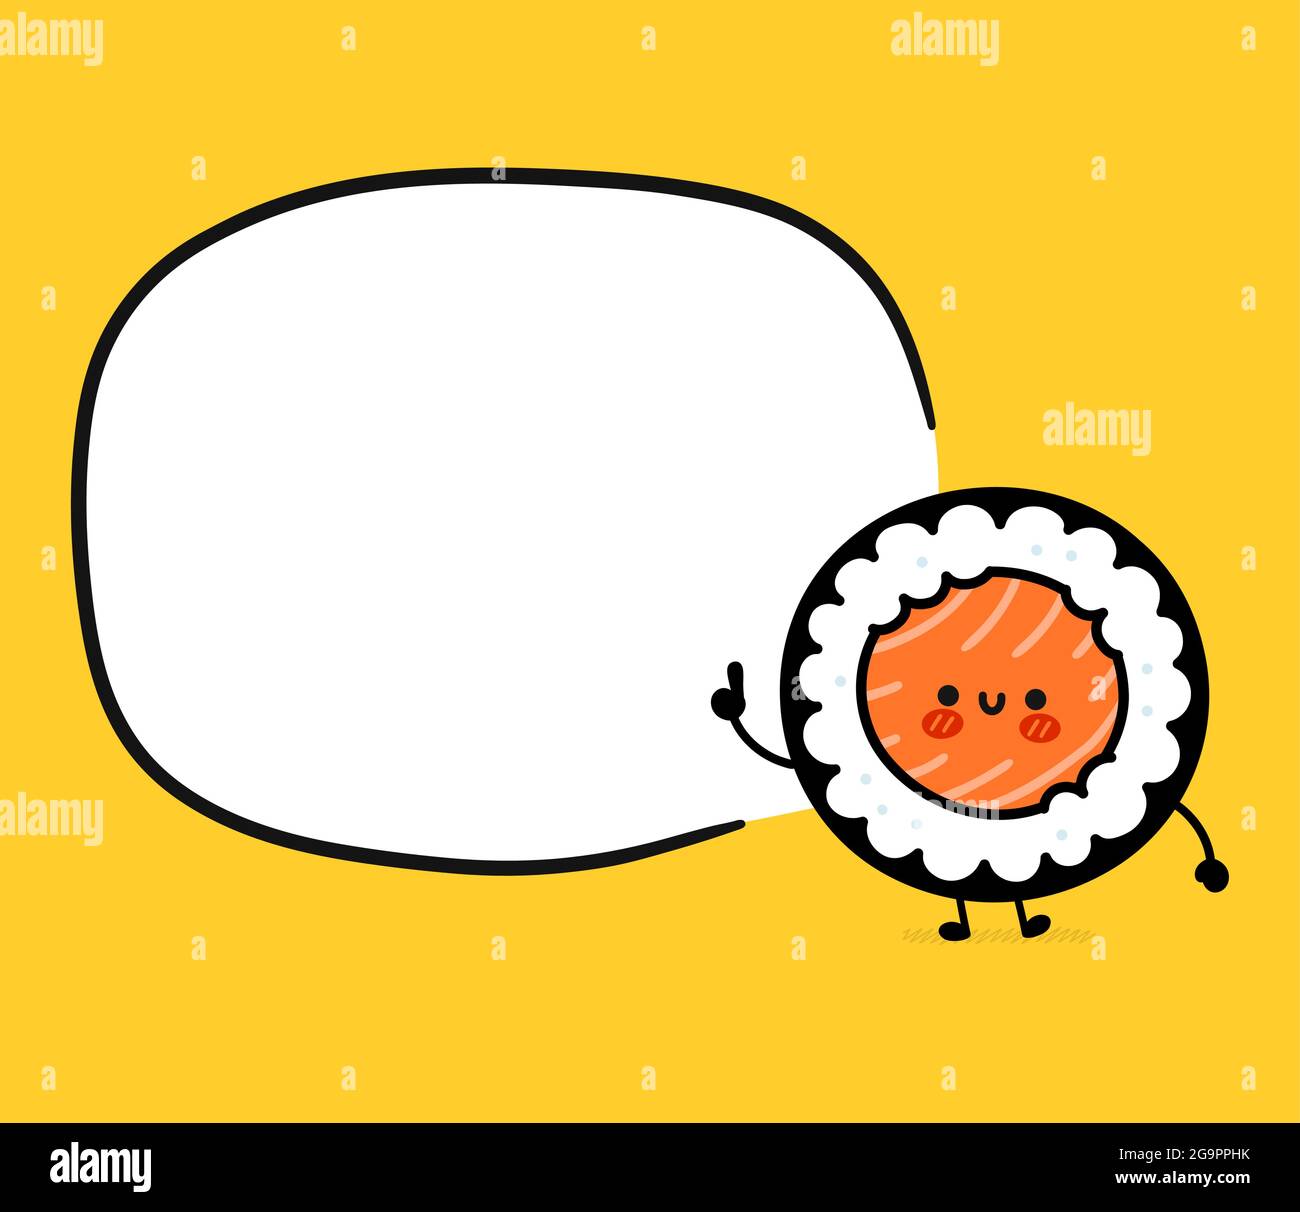 Niedliche lustige Sushi-Rolle Charakter mit Textfeld. Vektor flache Cartoon kawaii Figur Illustration Symbol. Sushi-Rolle, Maki, asiatische Lebensmittel Cartoon Charakter Konzept Stock Vektor